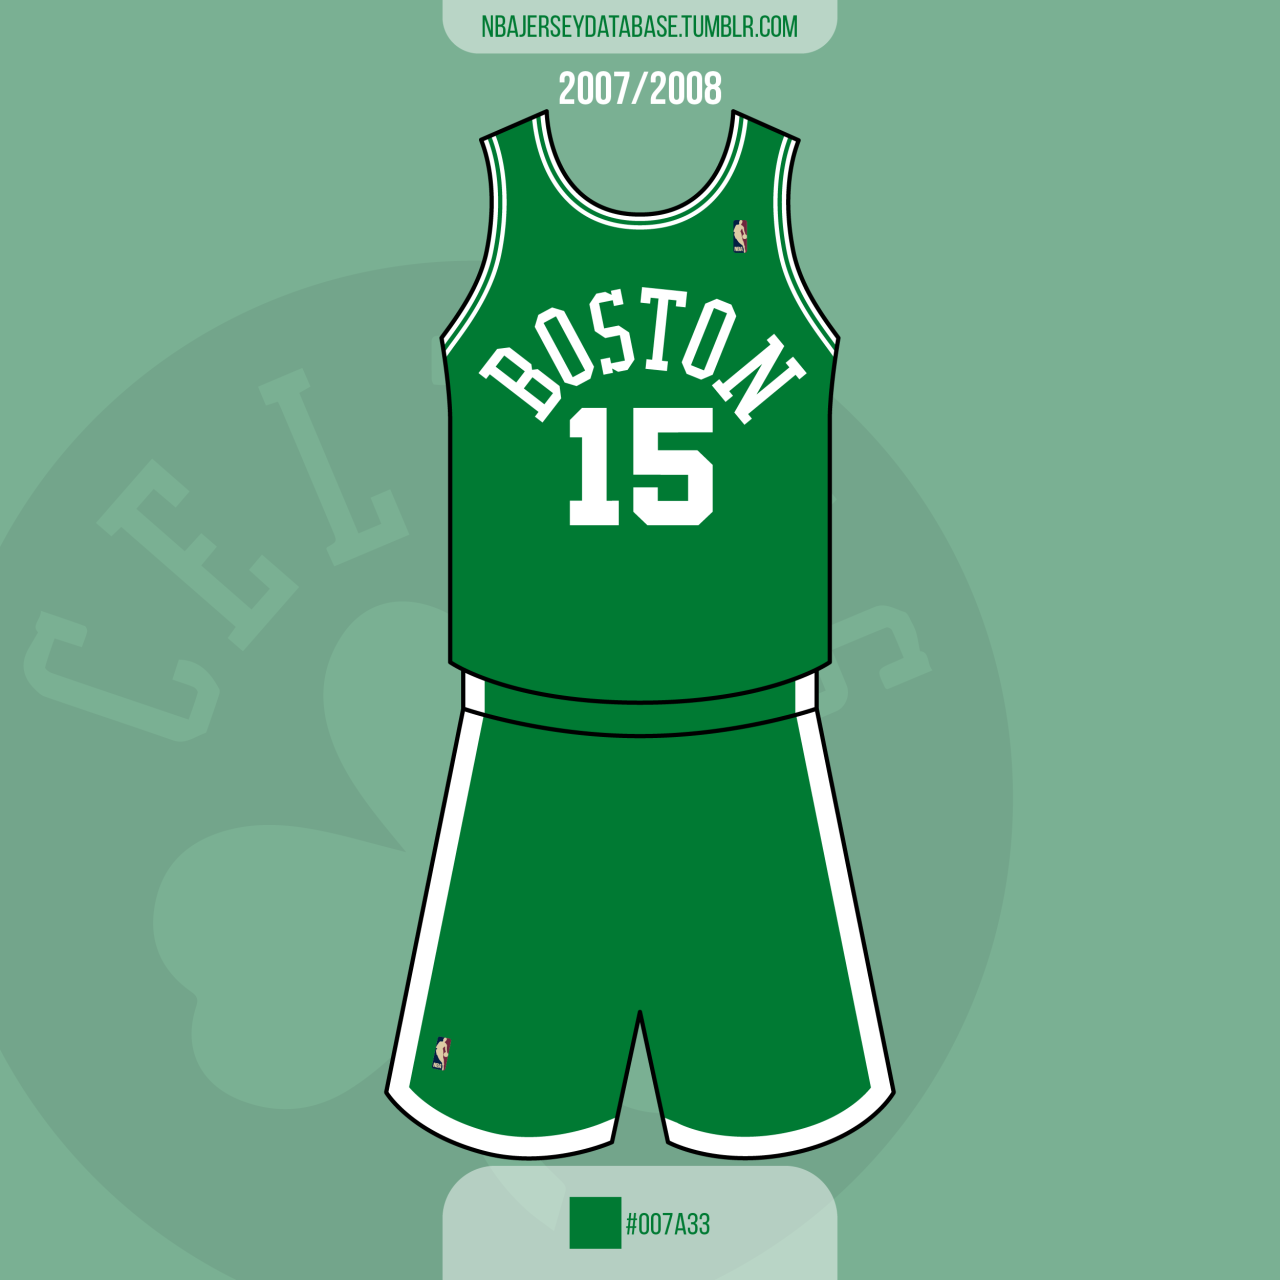 NBA Jersey Database, Boston Celtics Alternate Jersey 2014-2017